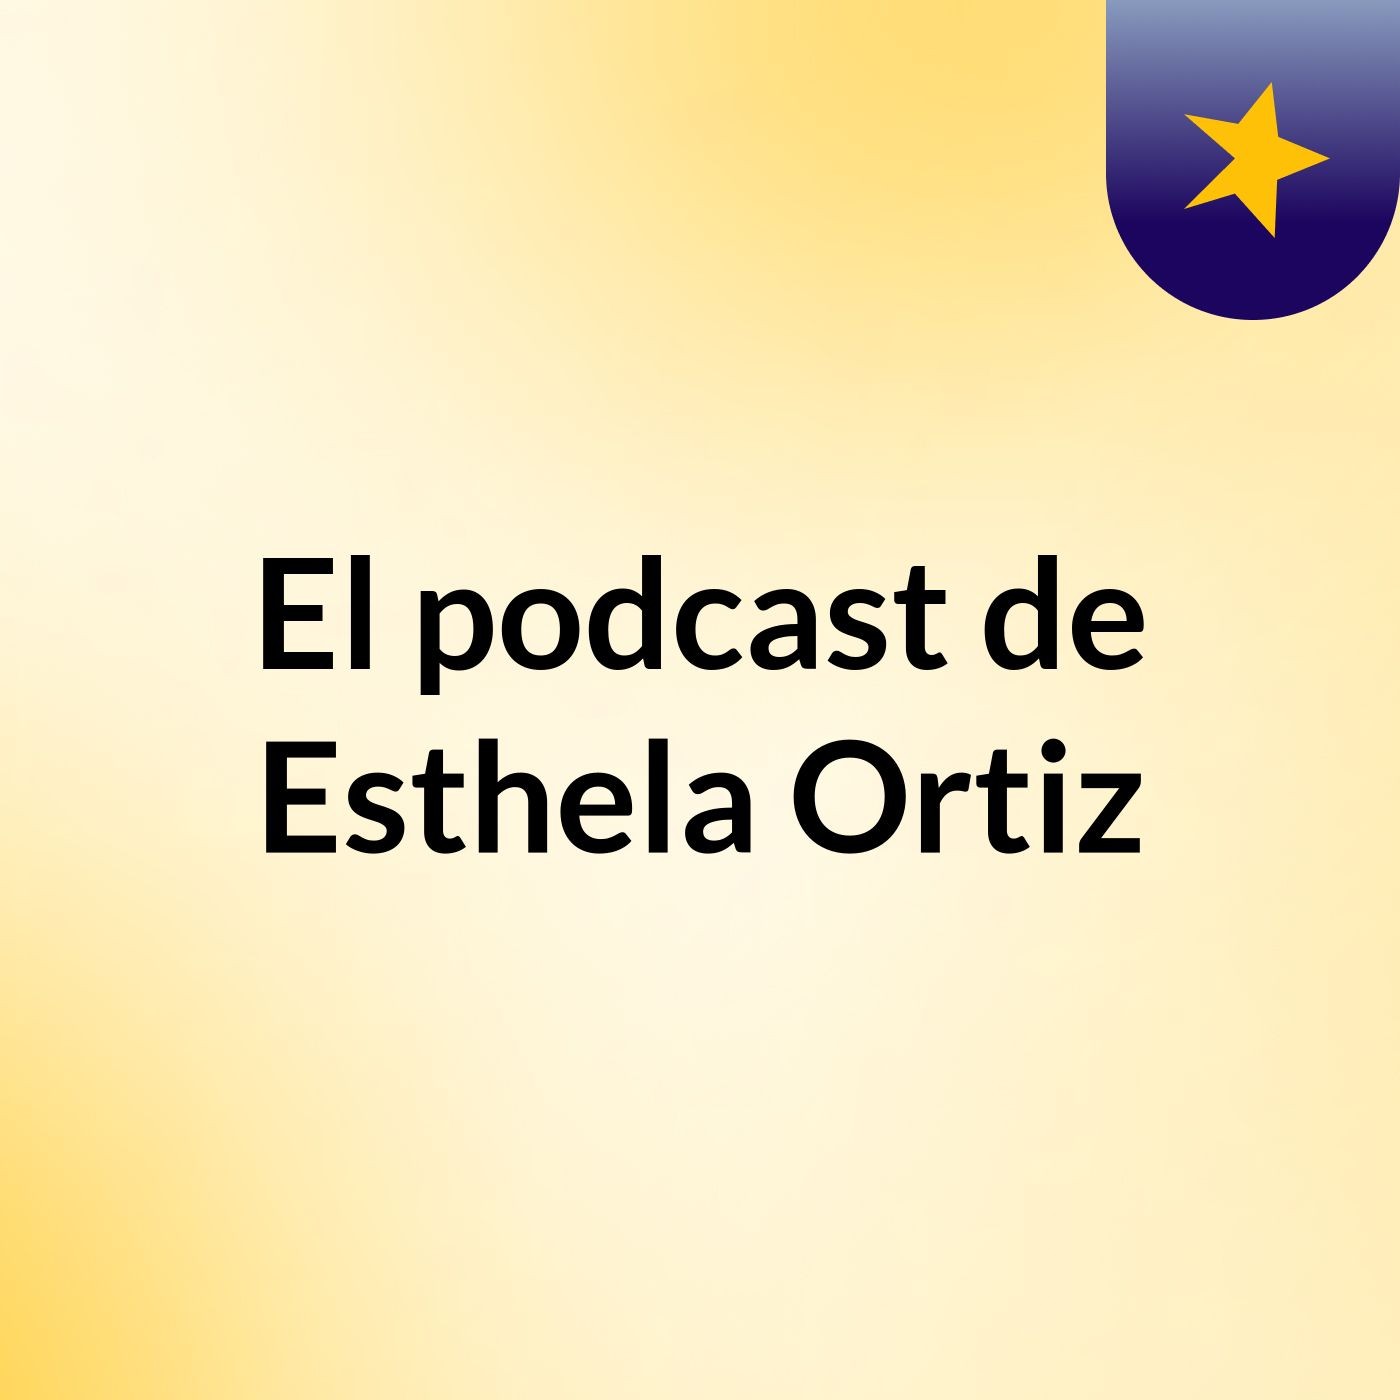 El podcast de Esthela Ortiz